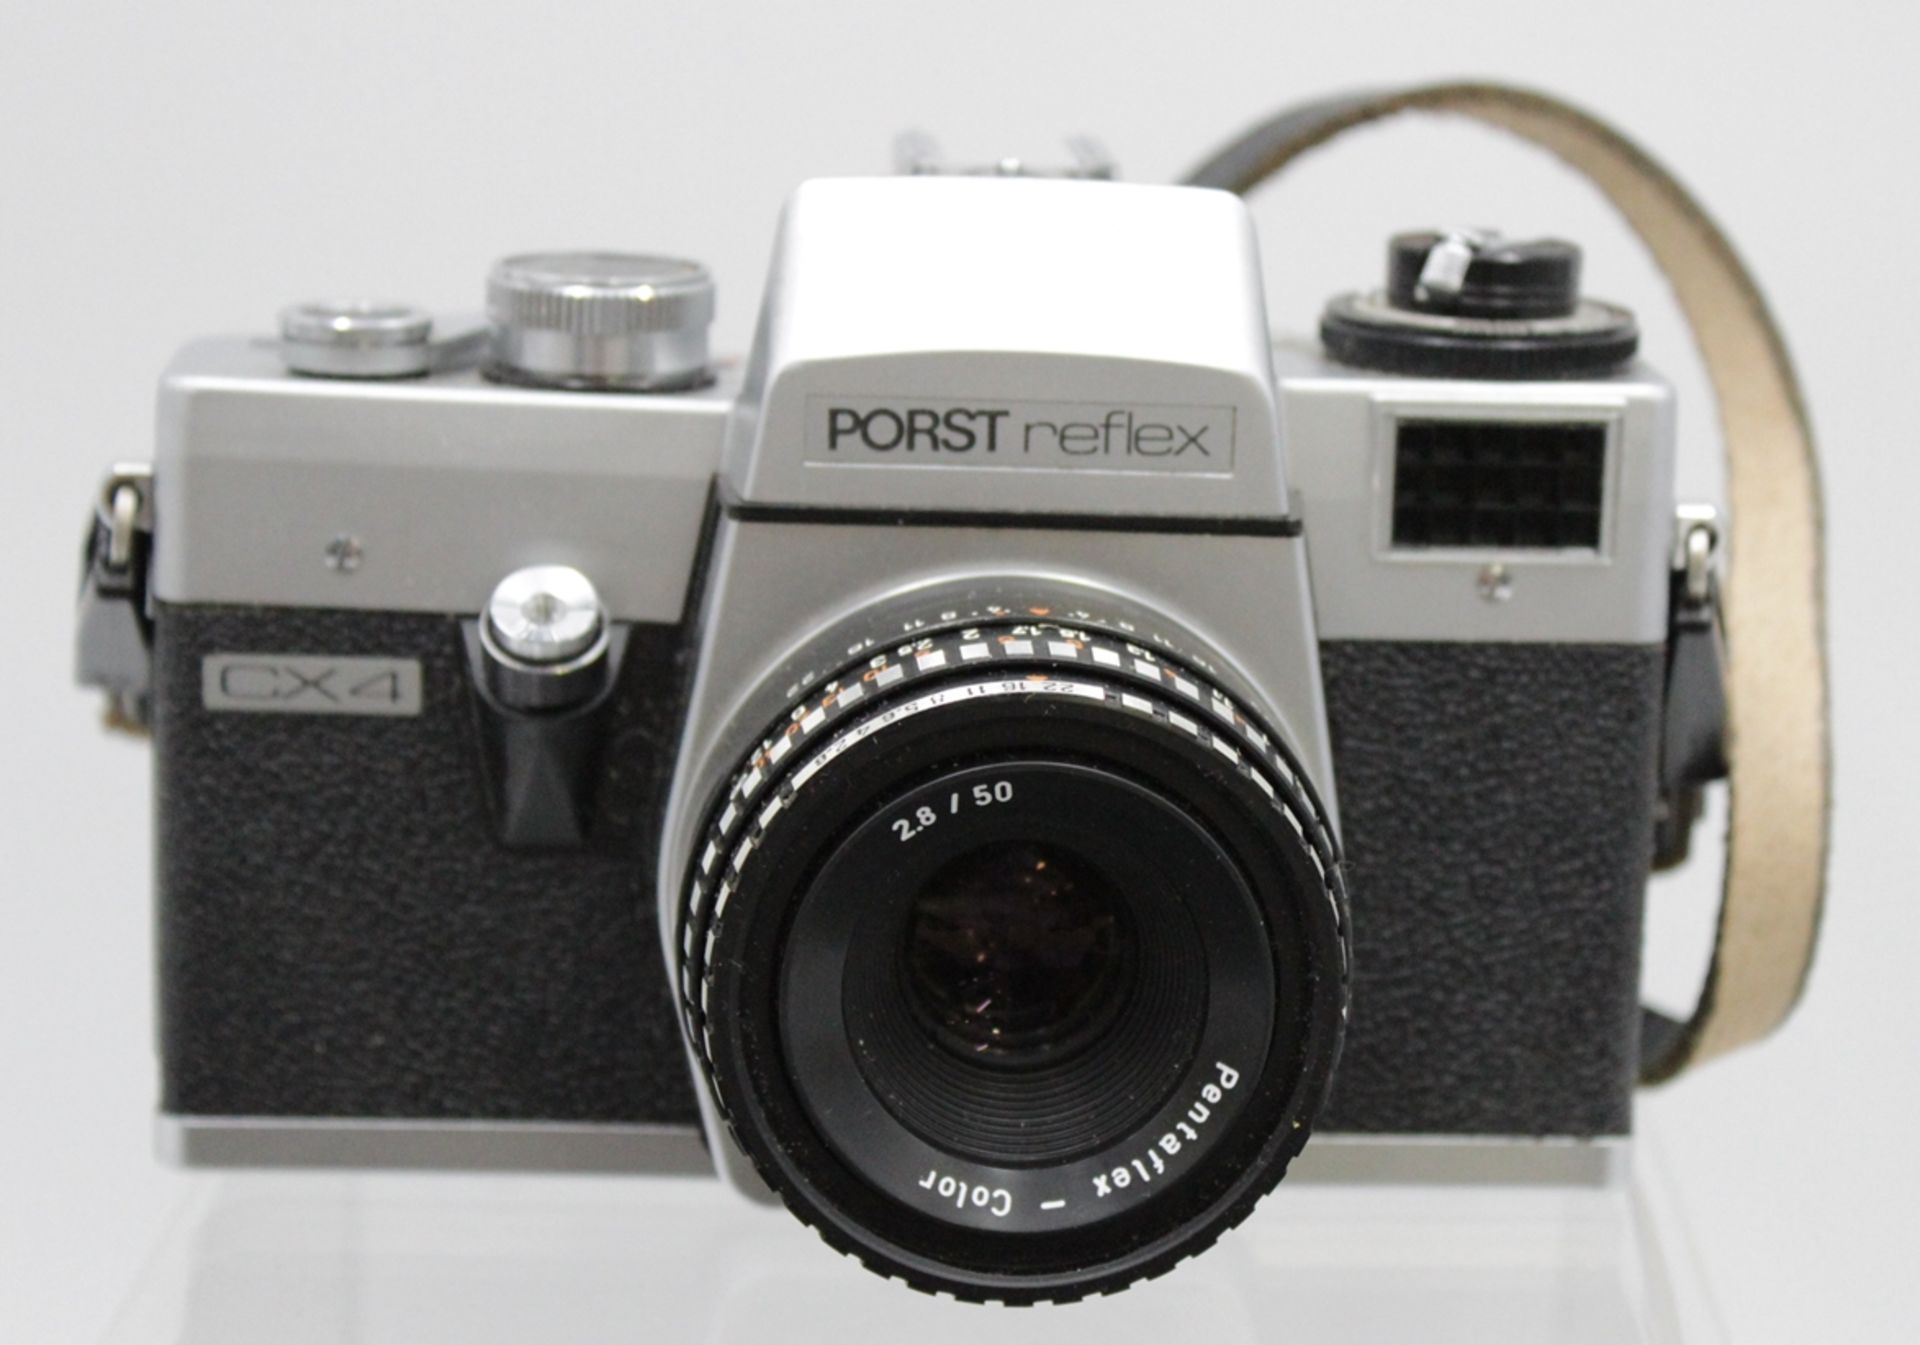 Fotoapparat, Porst Reflex CX4, mit div. Zubehör, in Tasche, Gebrauchsspuren, Funktion nicht geprüft - Bild 2 aus 7